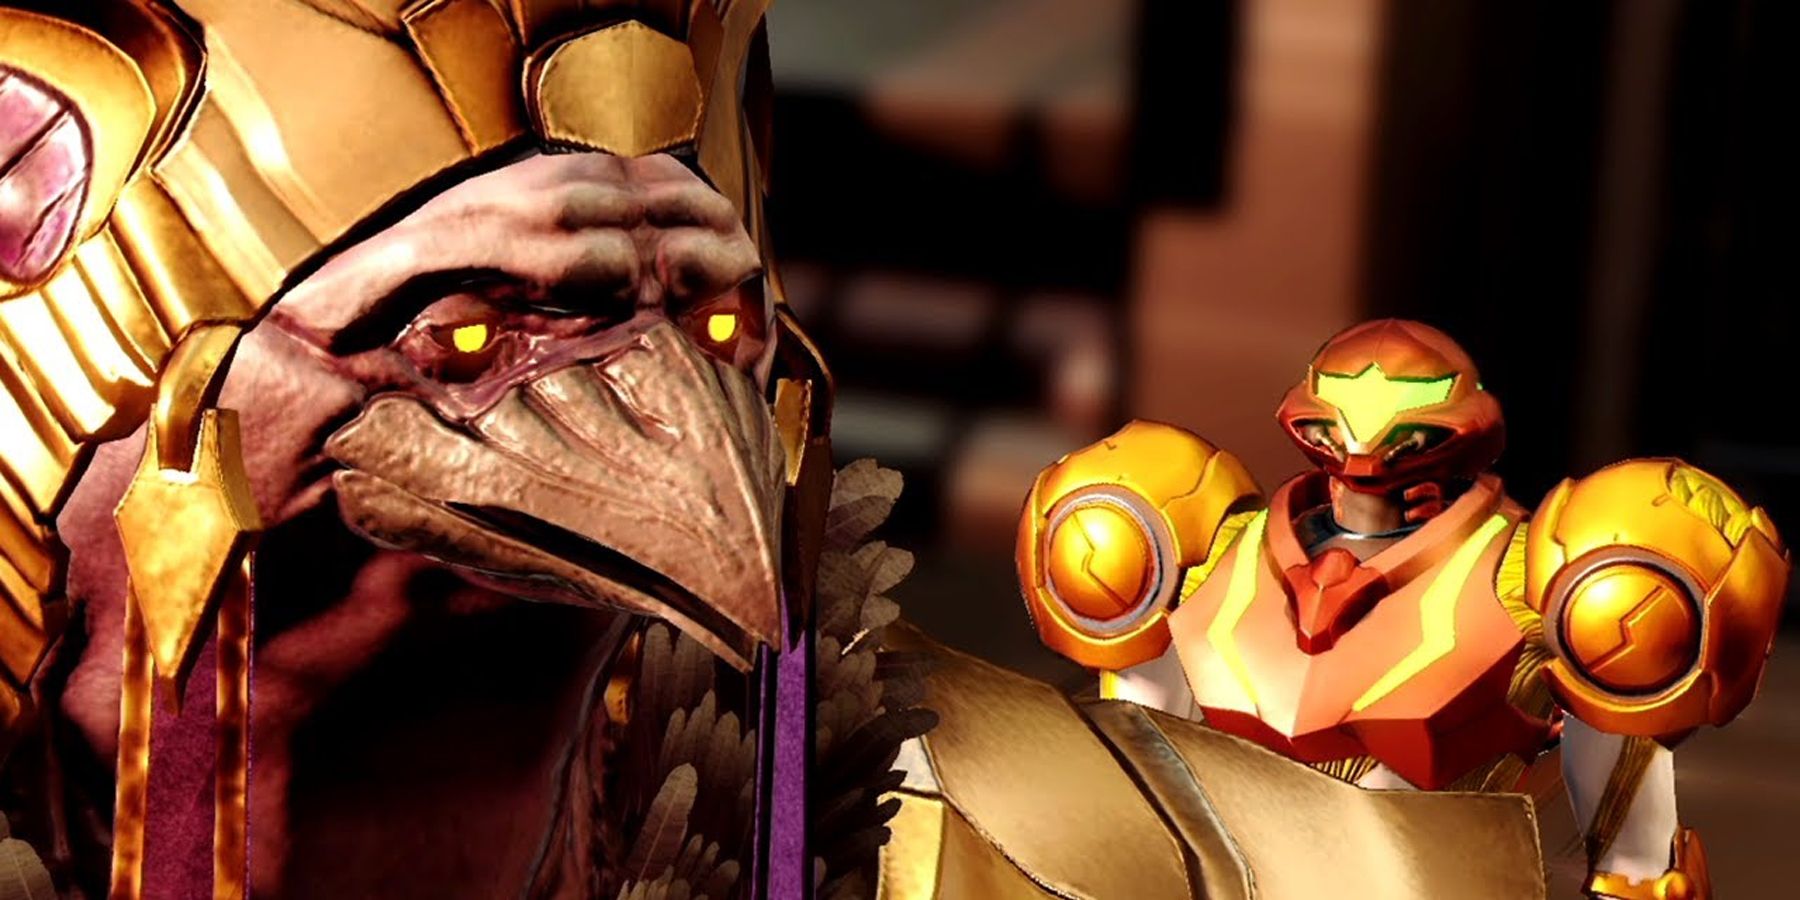 Chozo Quiet Bird addresses Samus over his shoulder in Metroid Dread.